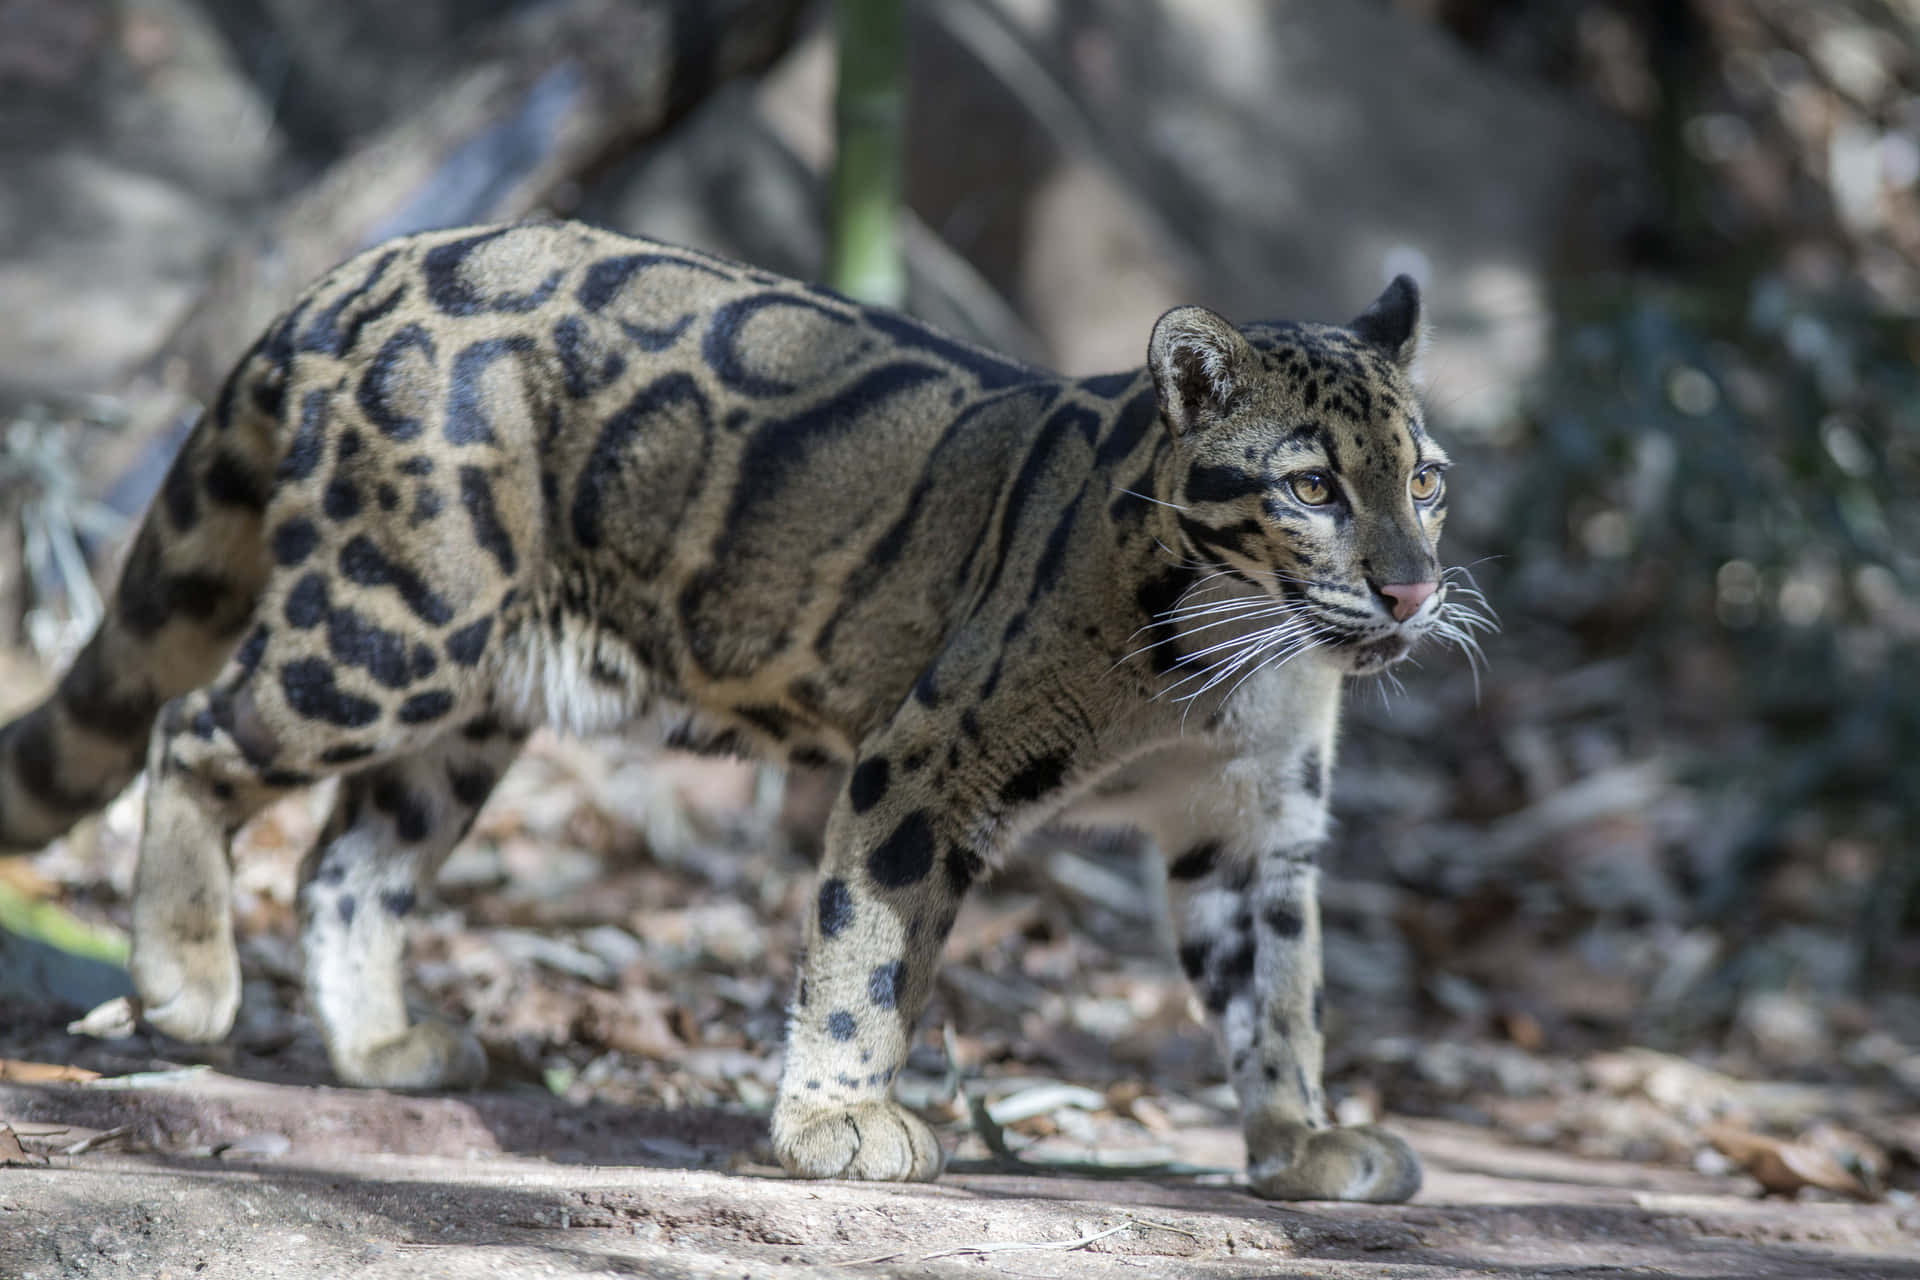 Imagende Un Leopardo Caminando En El Suelo.